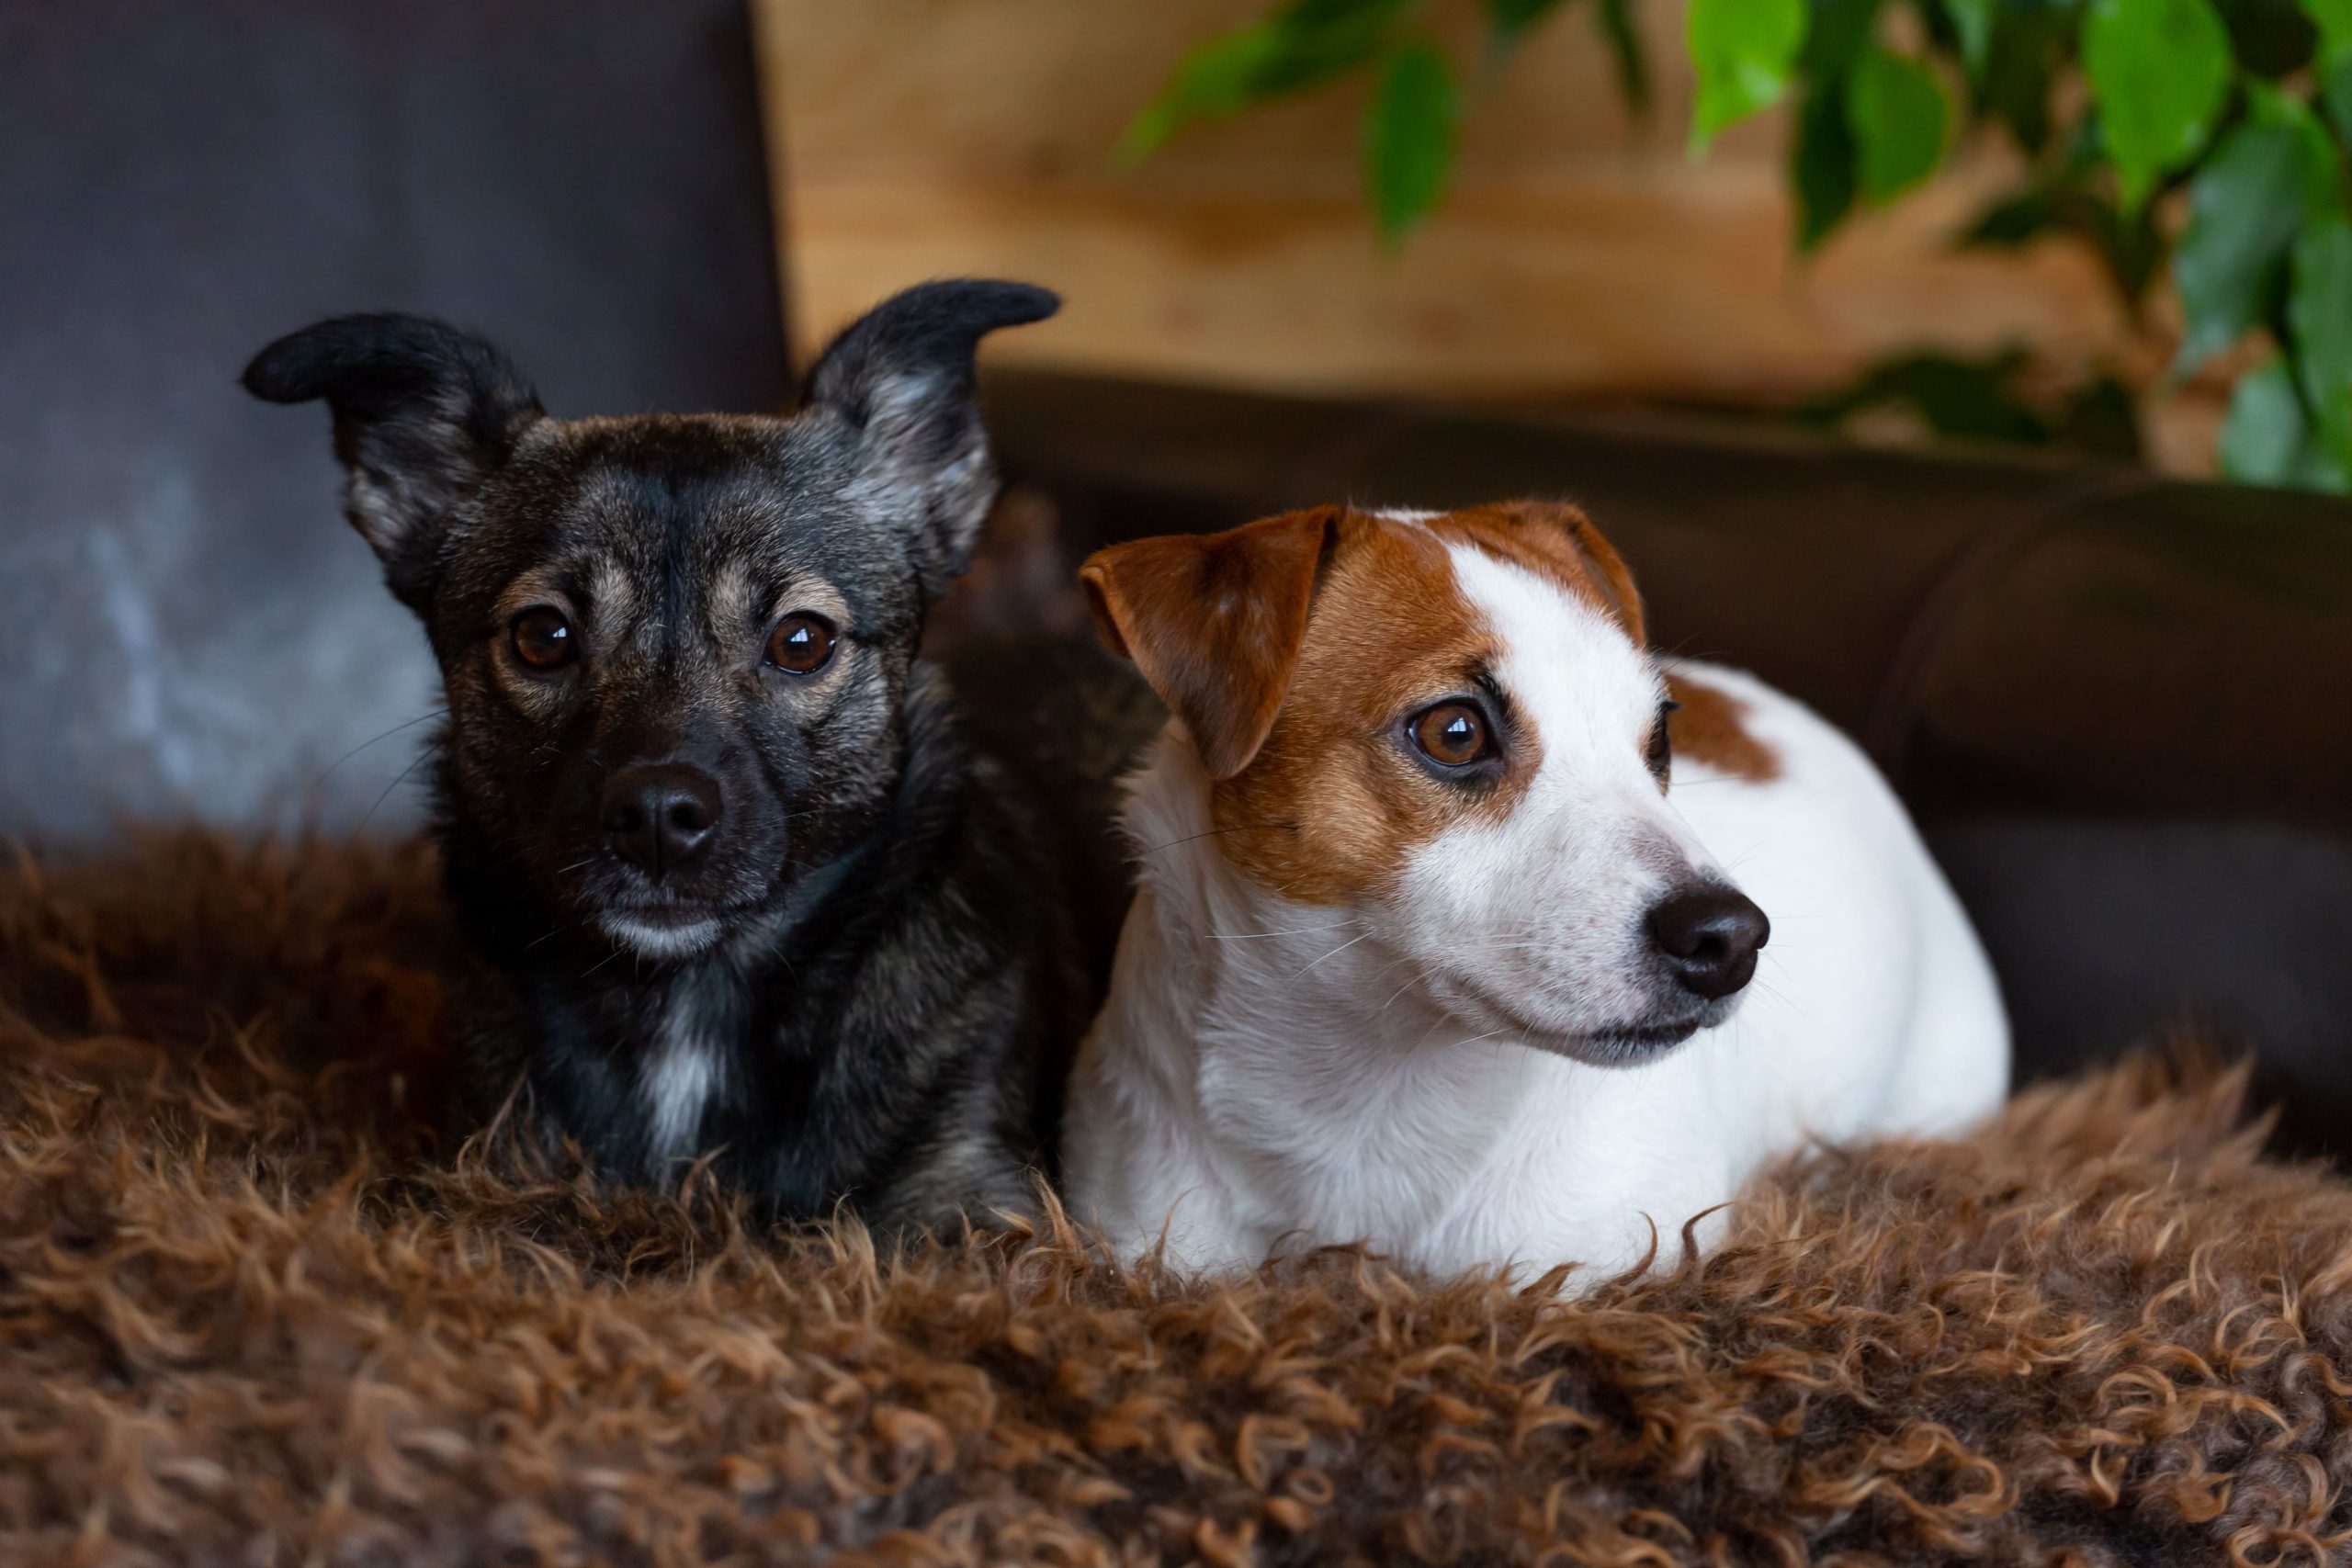 Ein dunkler kleiner Hund und ein weiß-braun-gescheckter kleiner Hund liegen nebeneinander im Korb.